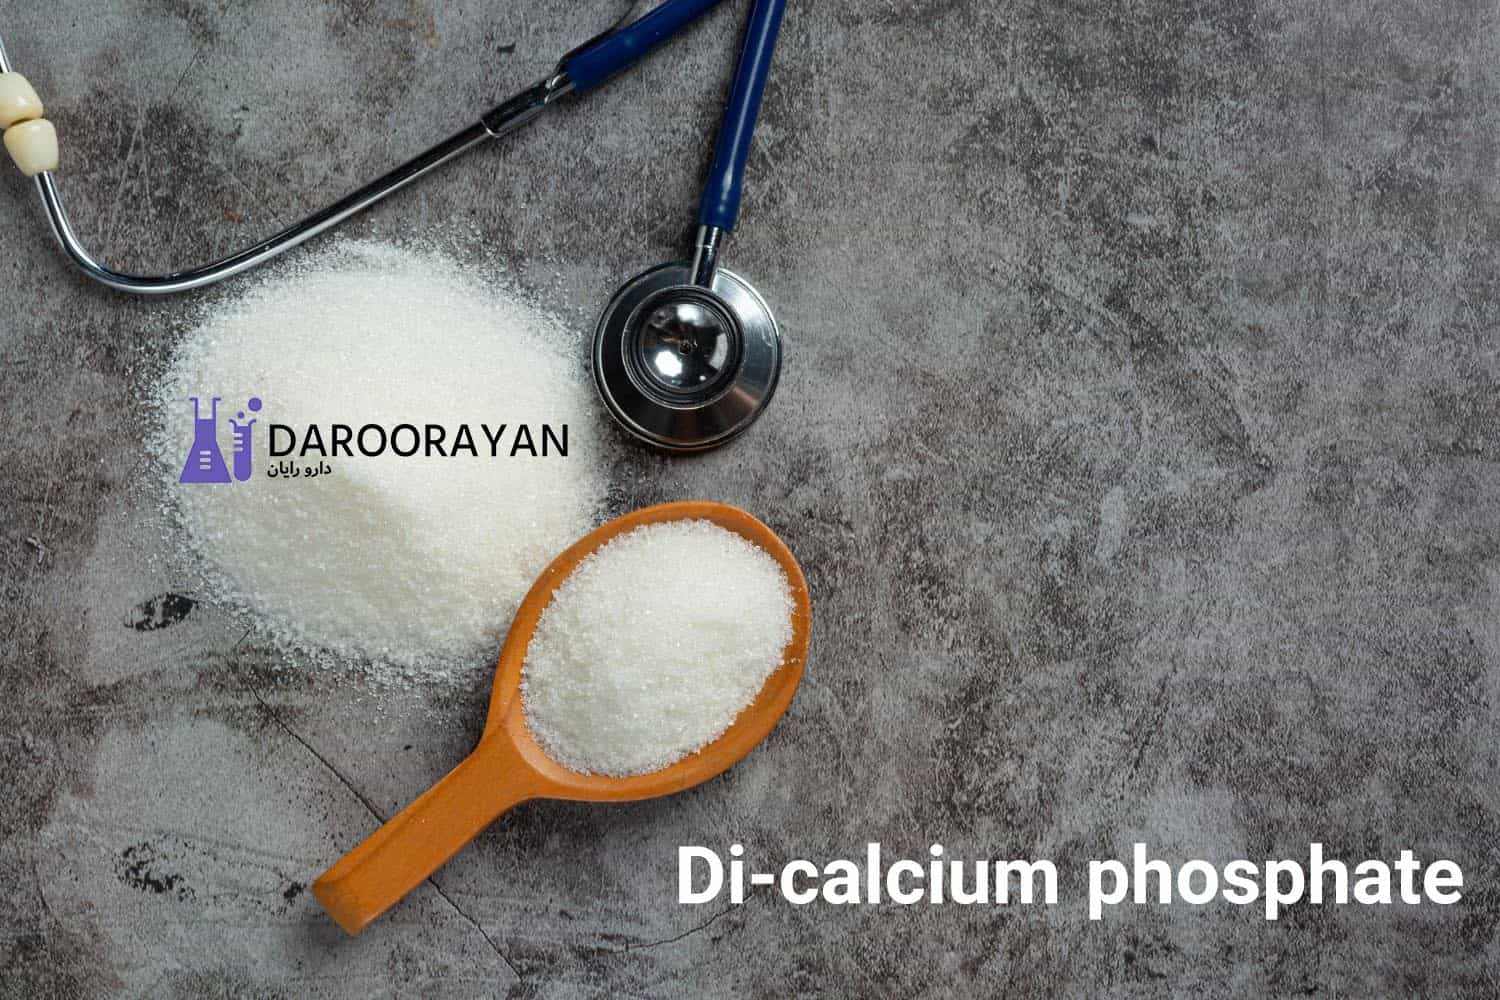 Di-calcium phosphate